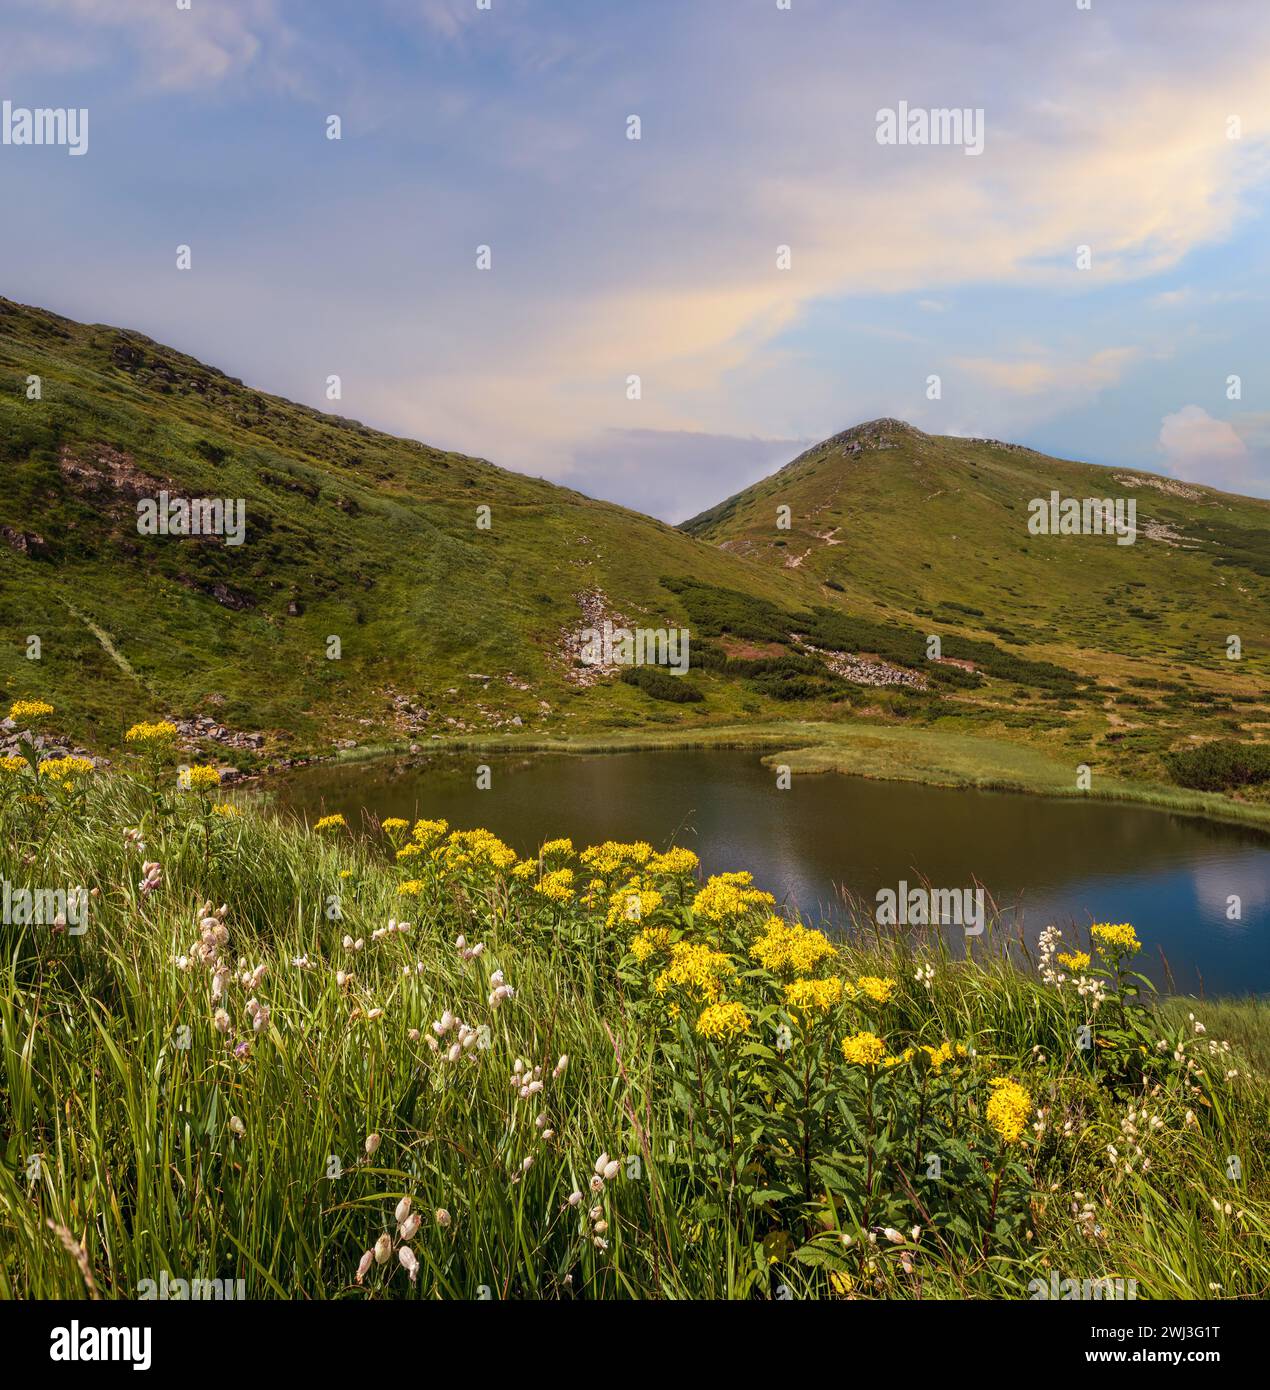 Summer Nesamovyte lake landscape, Chornohora ridge, Carpathian mountains, Ukraine Stock Photo